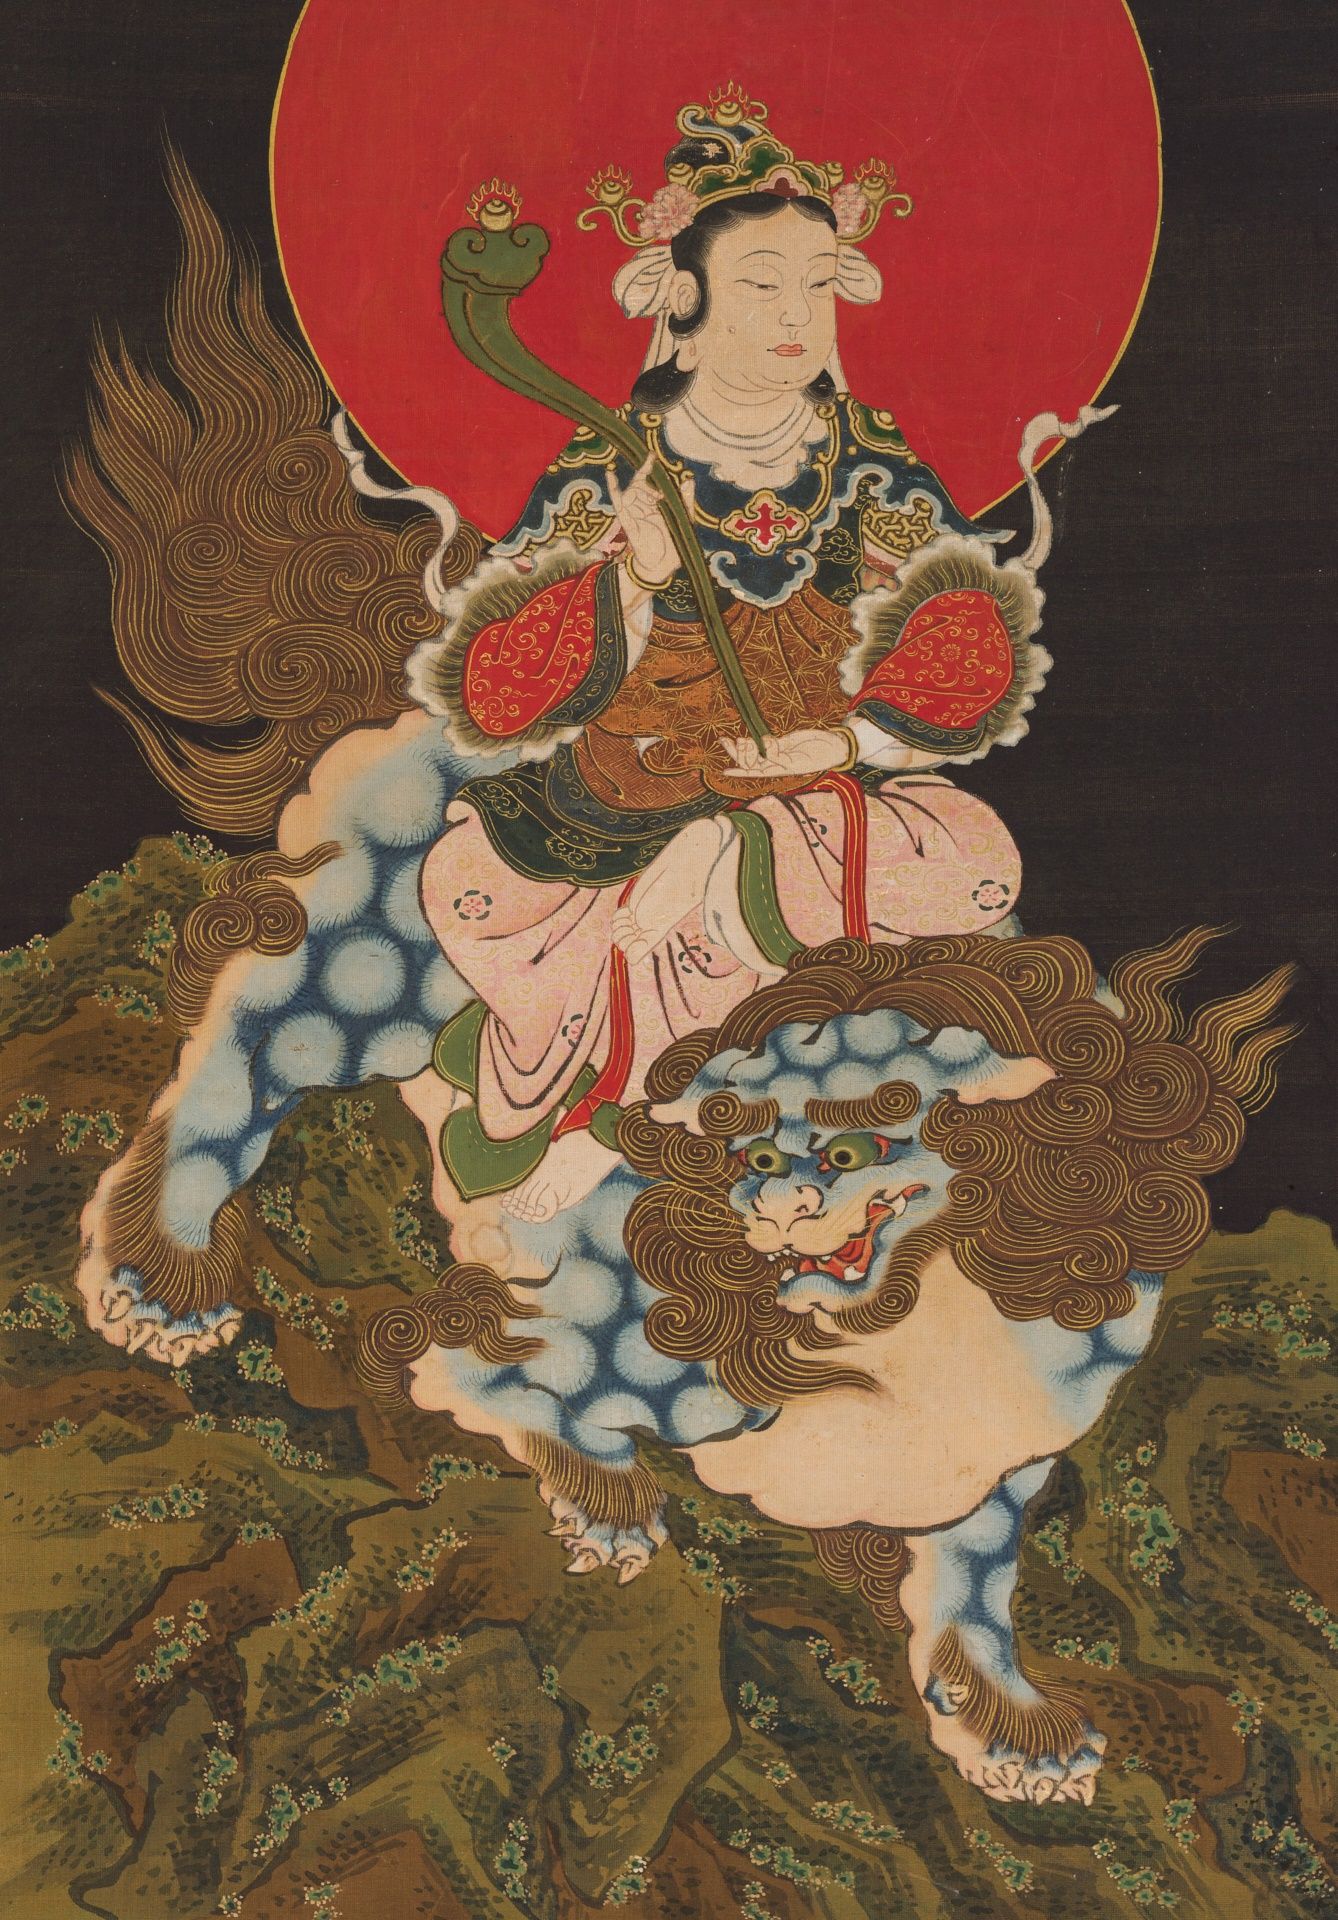 A BUDDHIST KAKEMONO, 'MONJU BOSATSU RIDING A SHISHI'